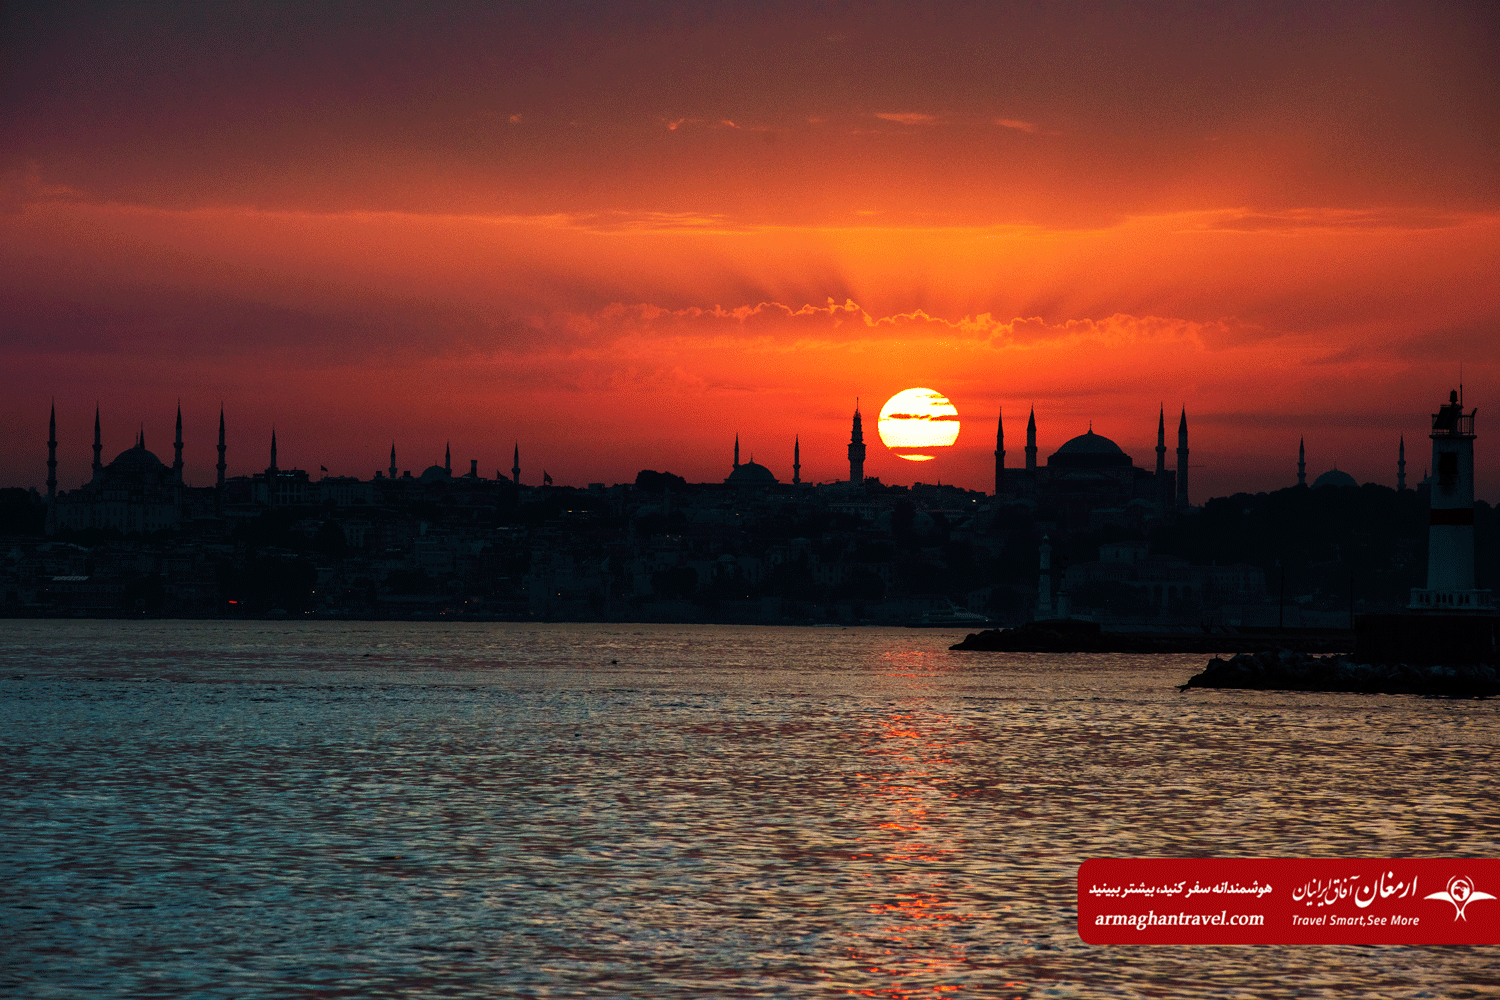 نمایی از غروب زیبای آفتاب در تور استانبول لحظه آخری